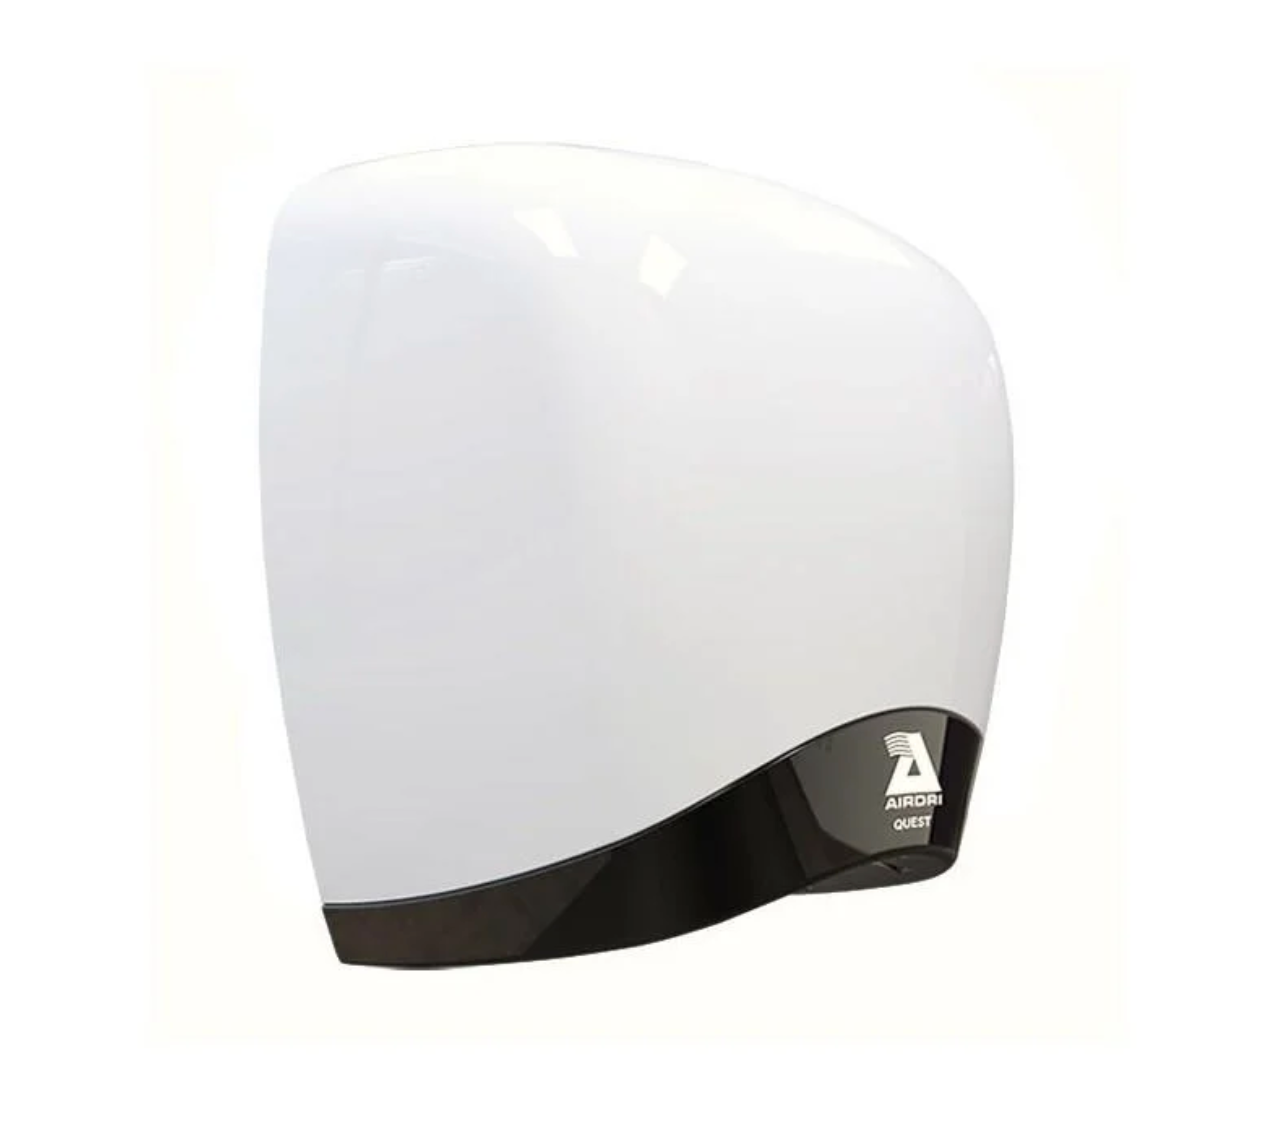 AirDri Quest Hand Dryer - White